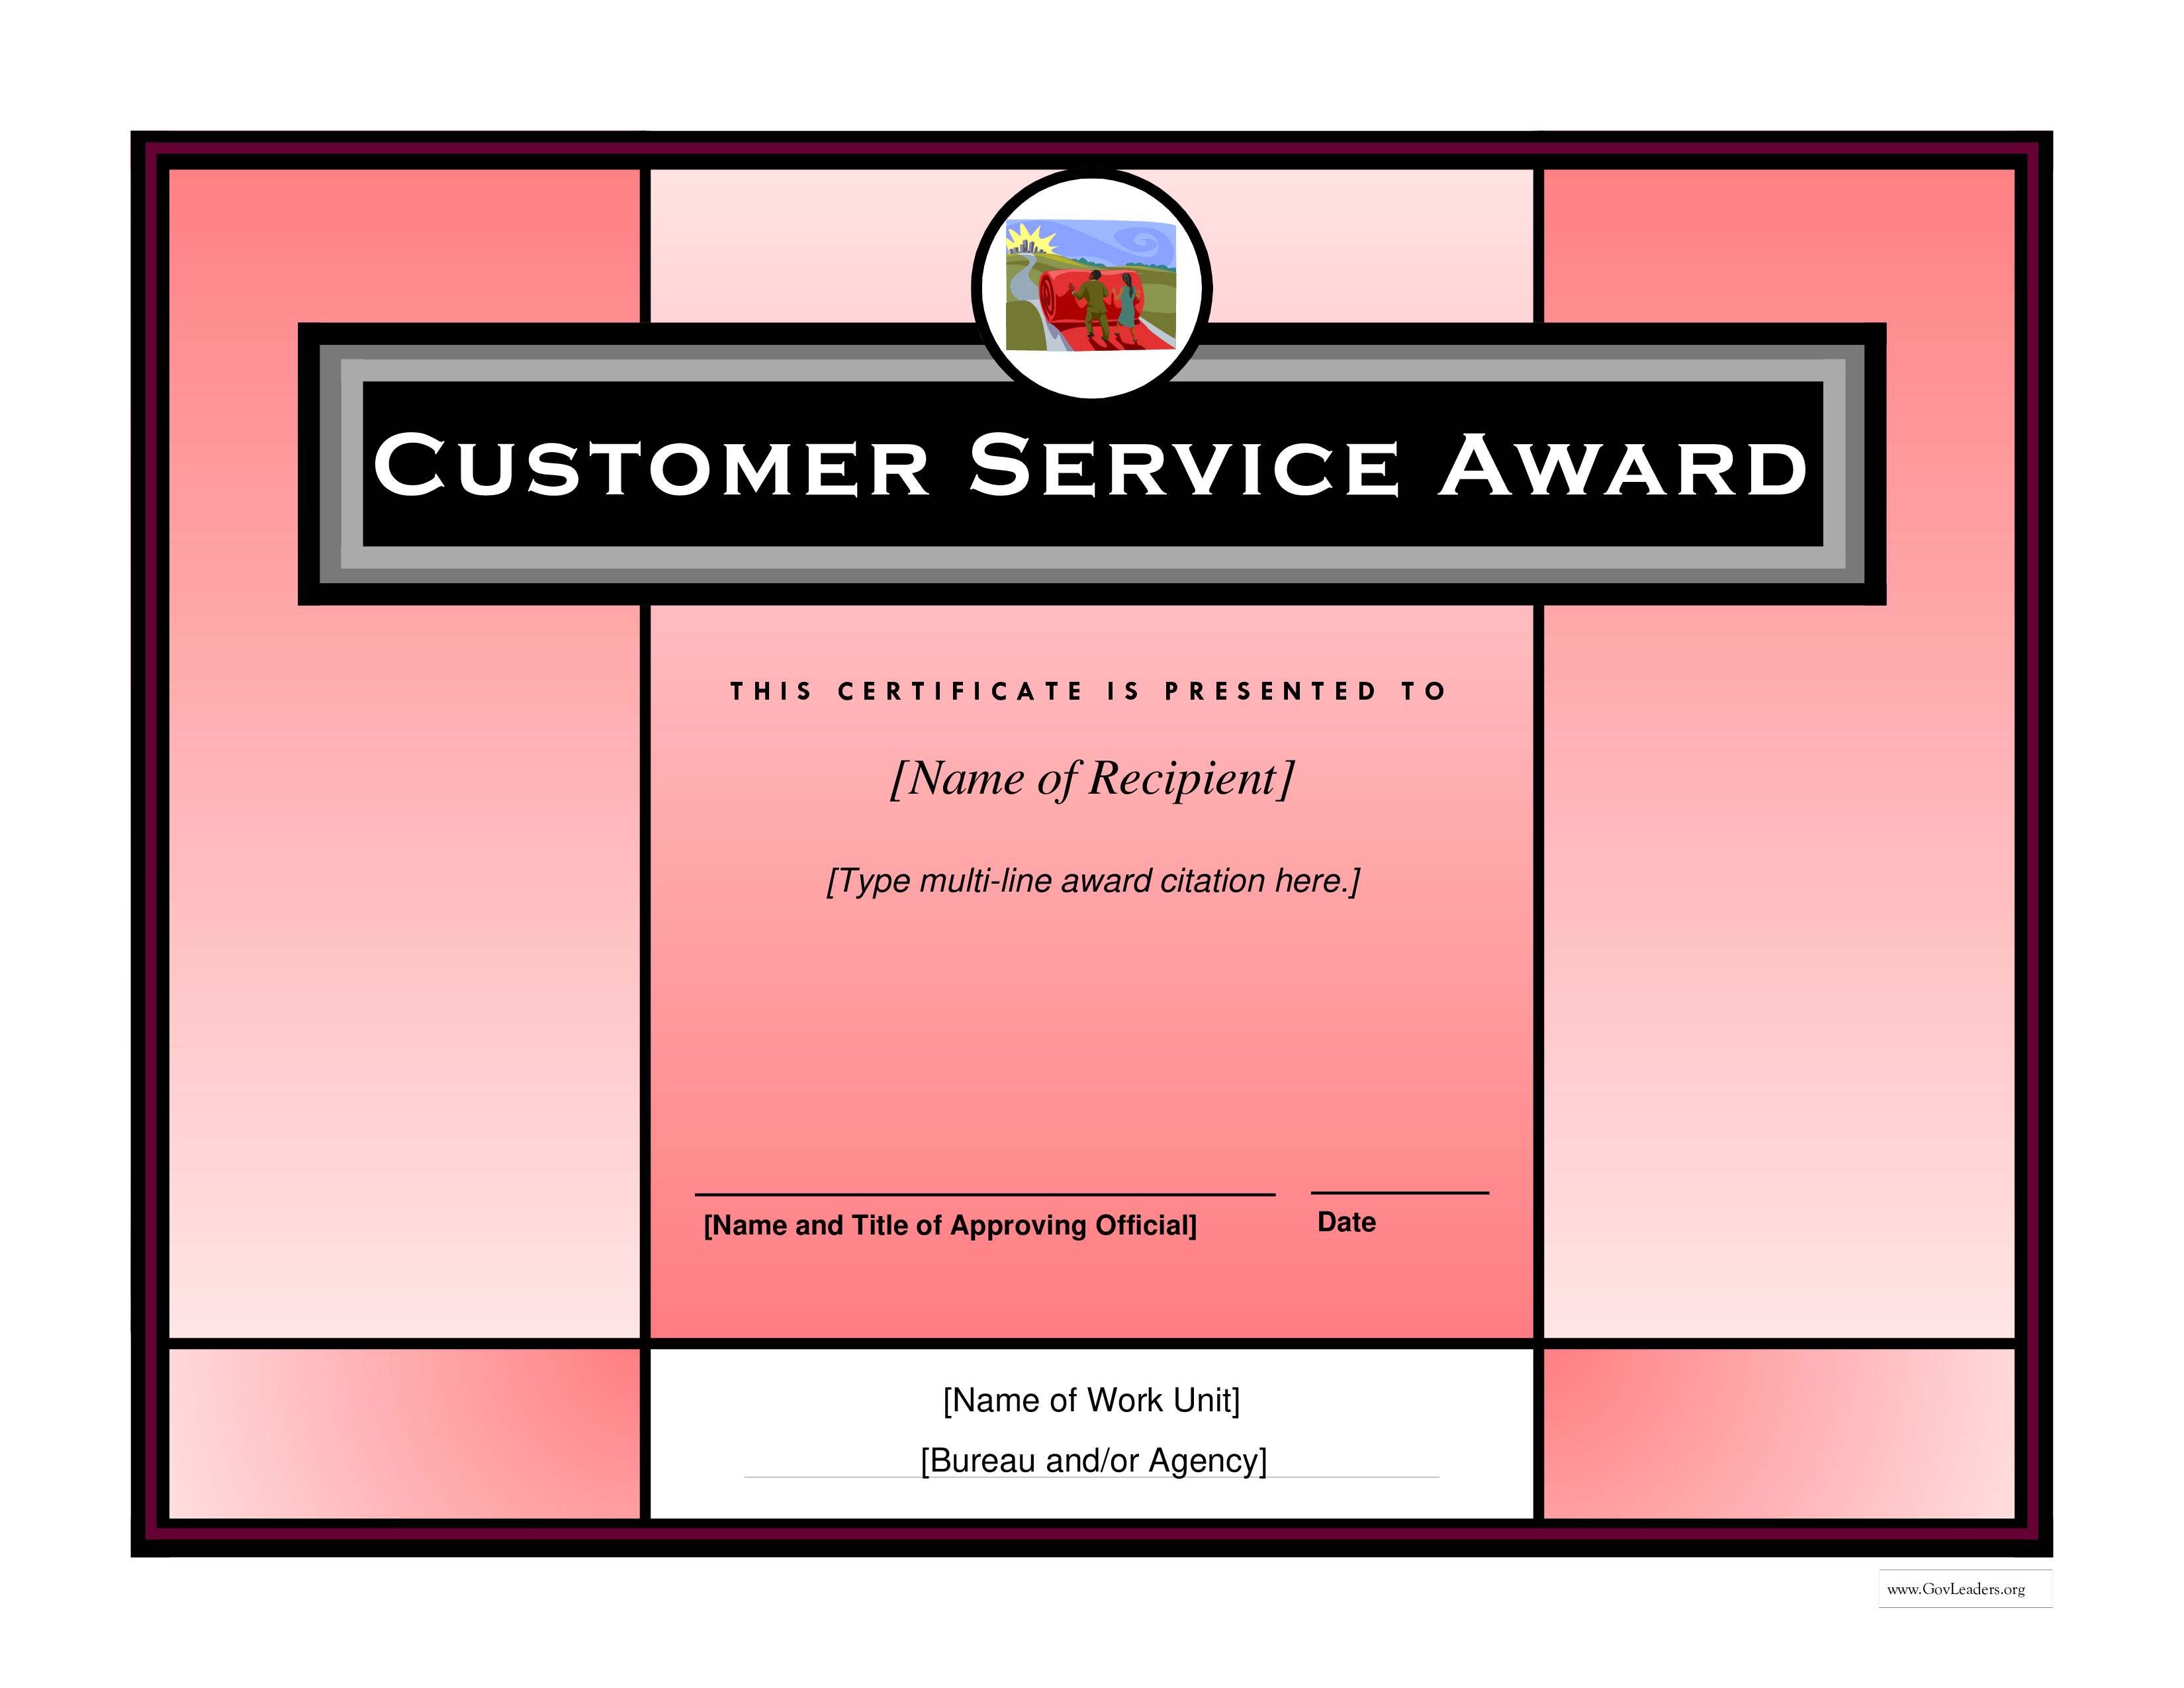 Customer Service Award main image